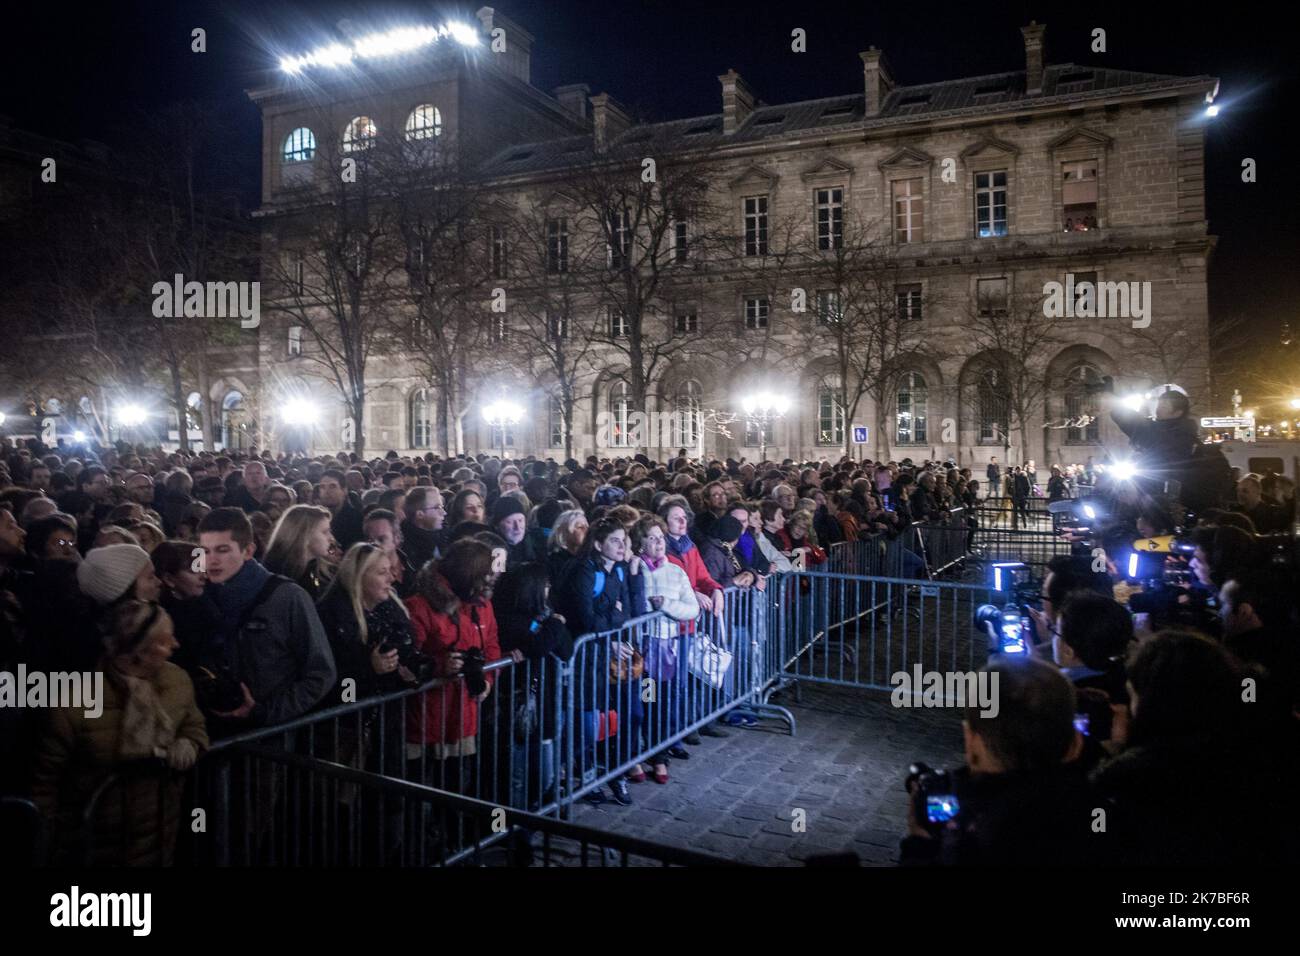 ©Michael Bunel / Le Pictorium/MAXPPP - Michael Bunel / Le Pictorium - 15/11/2015 - France / Ile-de-France / Paris - Rassemblement devant la cathedrale Notre Dame en hommage aux victimes des attentats terrorristes islamiste du 13 novembre 2015. 15 novembre 2015. Paris, France. / 15/11/2015 - France / Ile-de-France (region) / Paris - Rally in front of Notre Dame cathedral in tribute to the victims of the Islamist terrorist attacks of November 13, 2015. November 15, 2015. Paris, France. Stock Photo